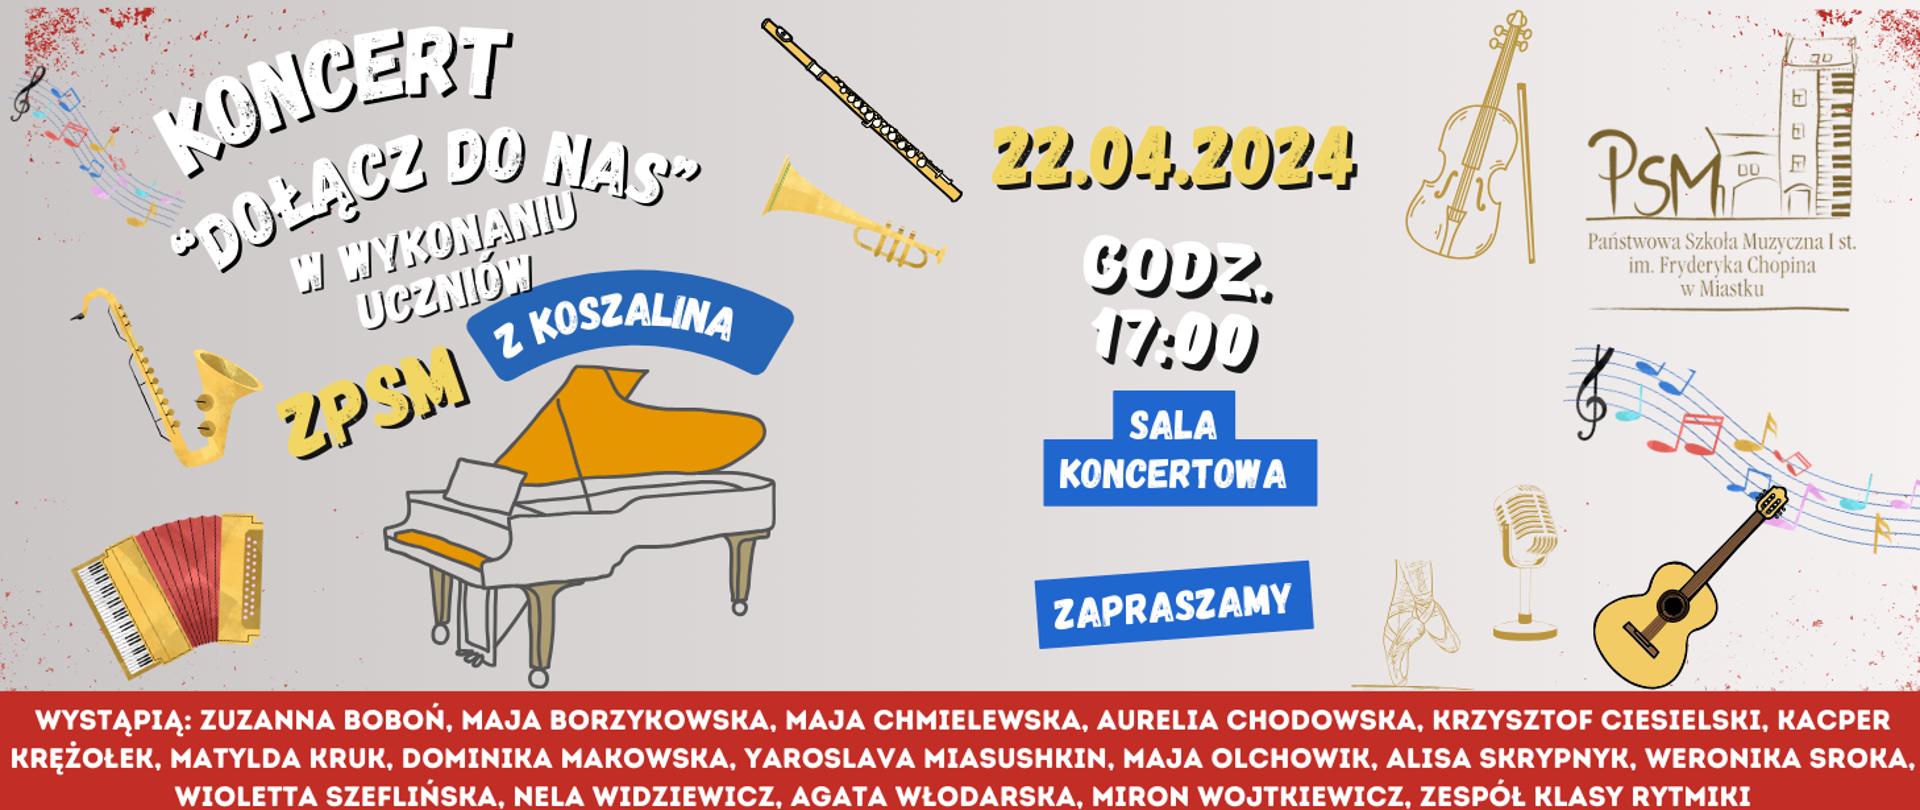 Grafika informująca o koncercie uczniów ZPSM w Koszalina 22 kwietnia 2024 o godz. 17:00 w sali koncertowej naszej szkoły.